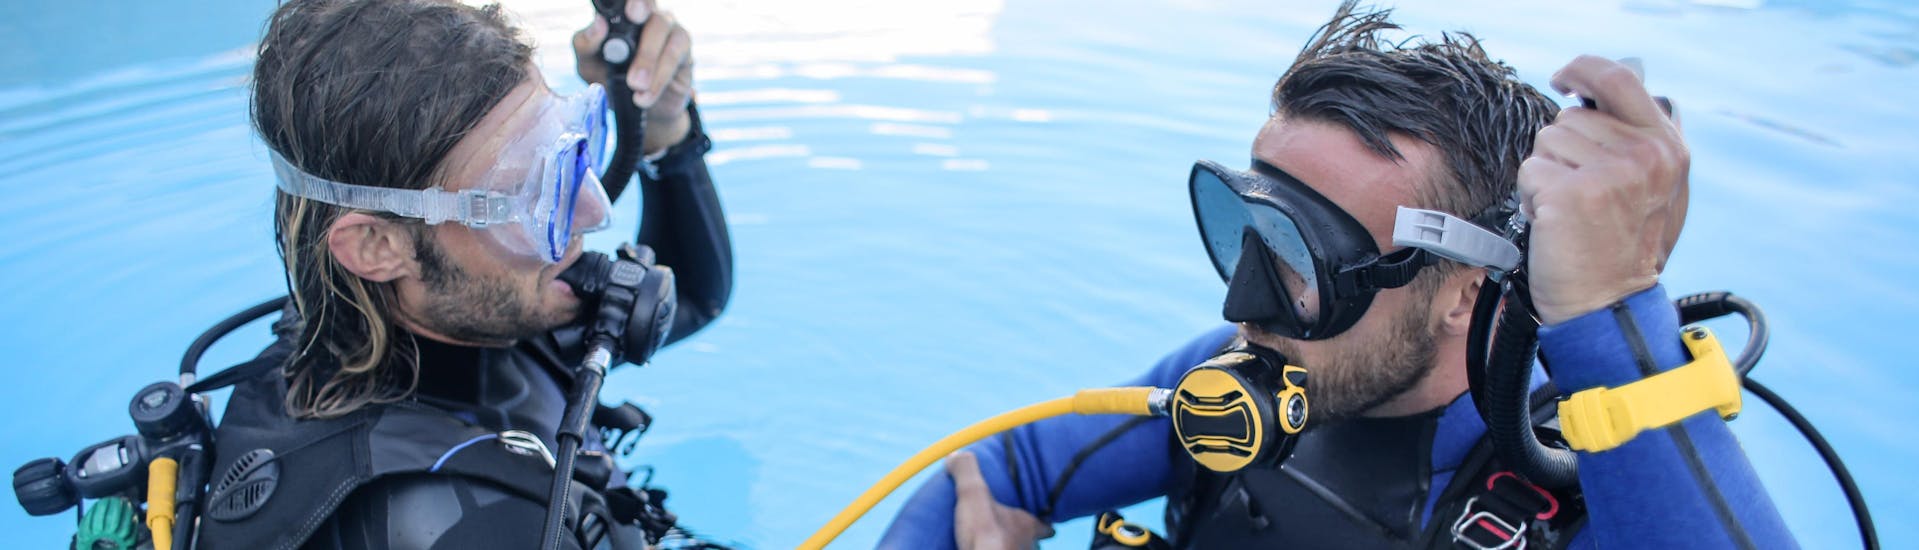 Dans le cadre d'un baptême de plongée, un moniteur de plongée apprend à un élève à utiliser son équipement de plongée dans une piscine.